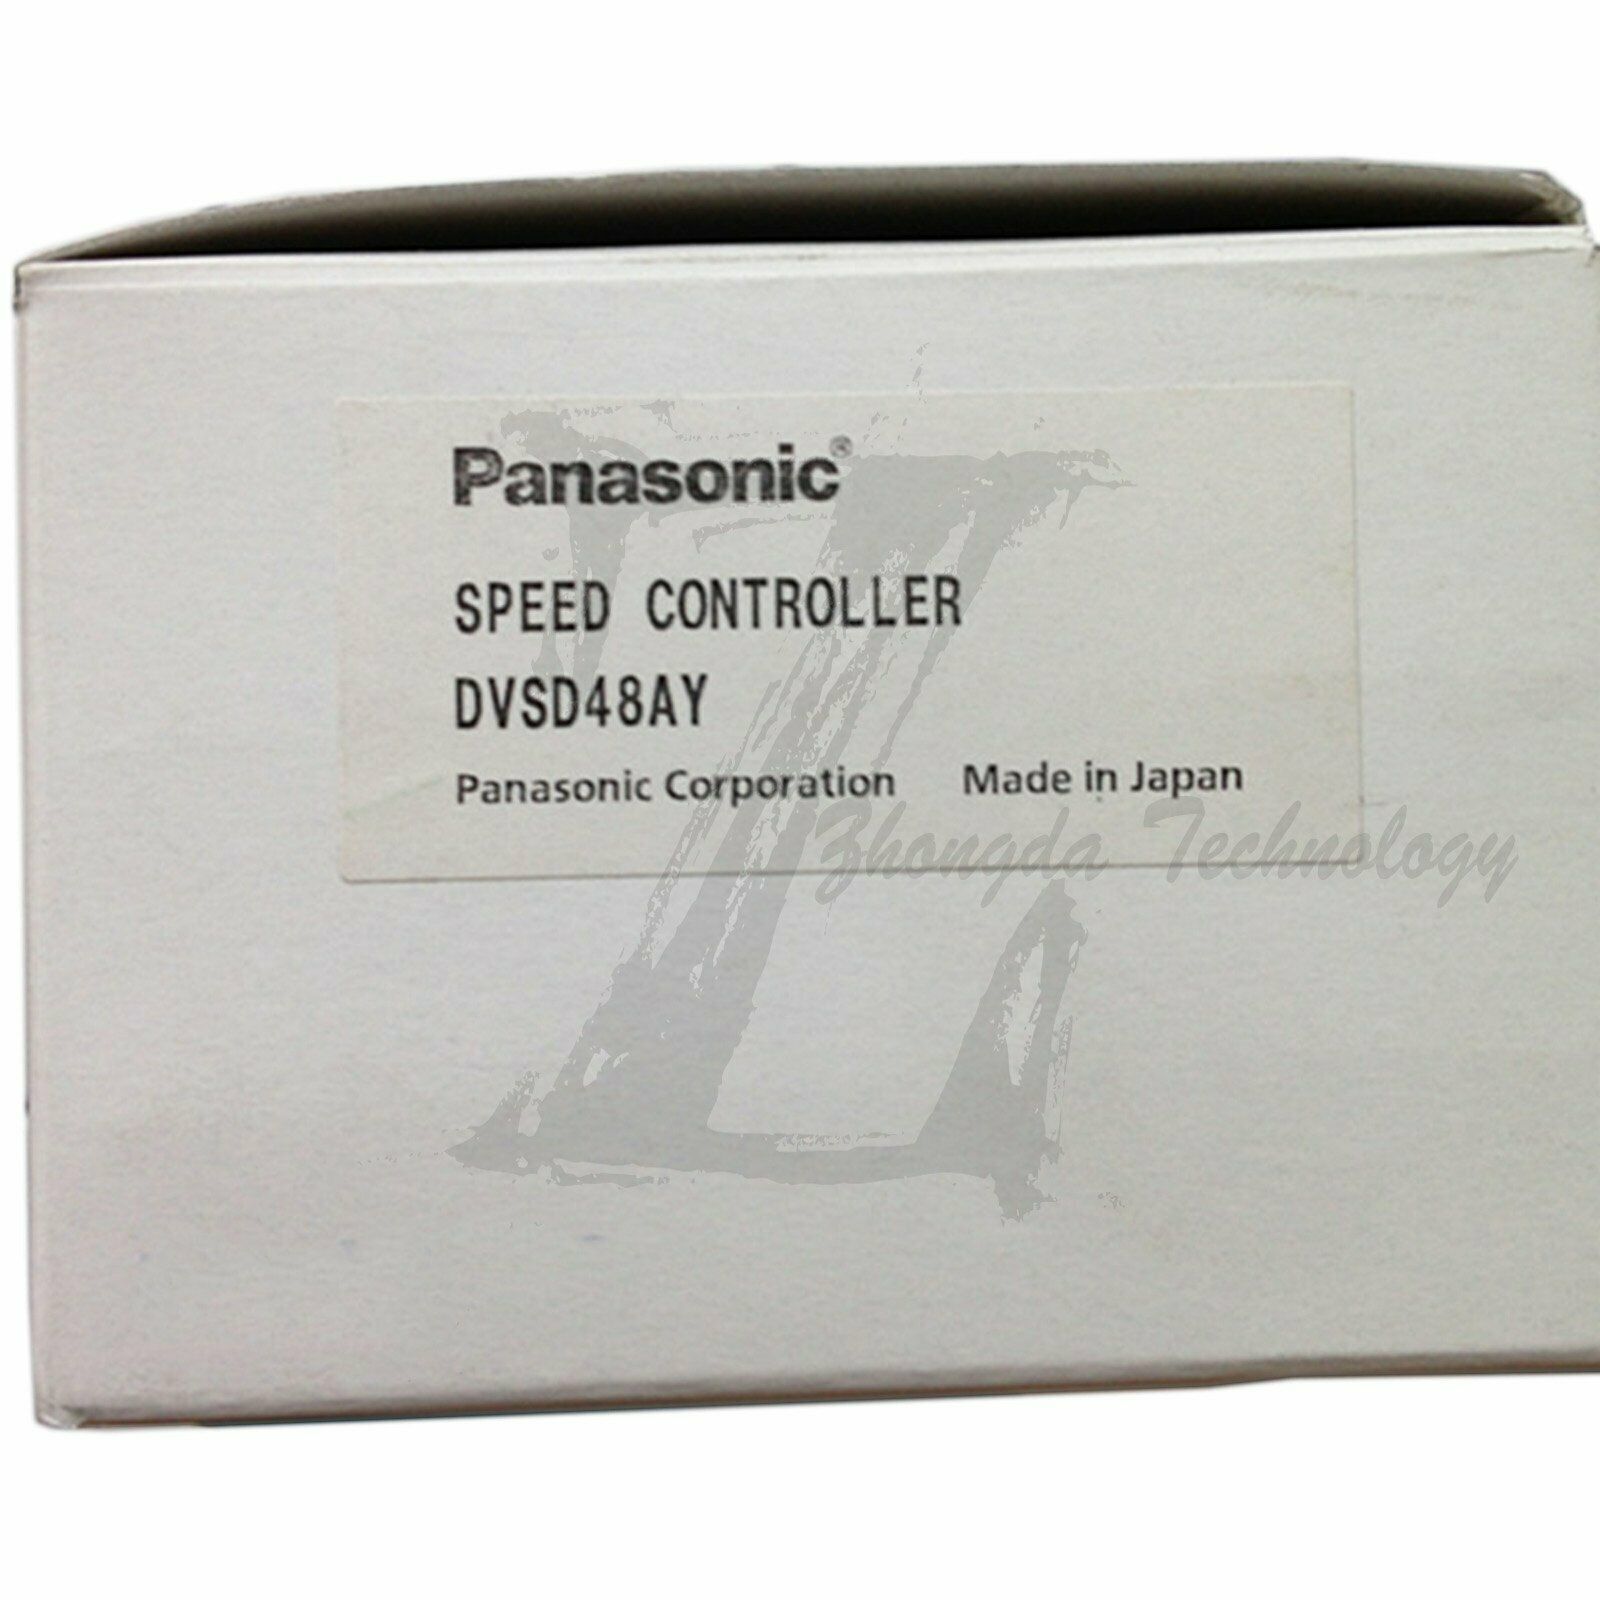 New In Box 1pc Panasonic Speeder DVSD48BY